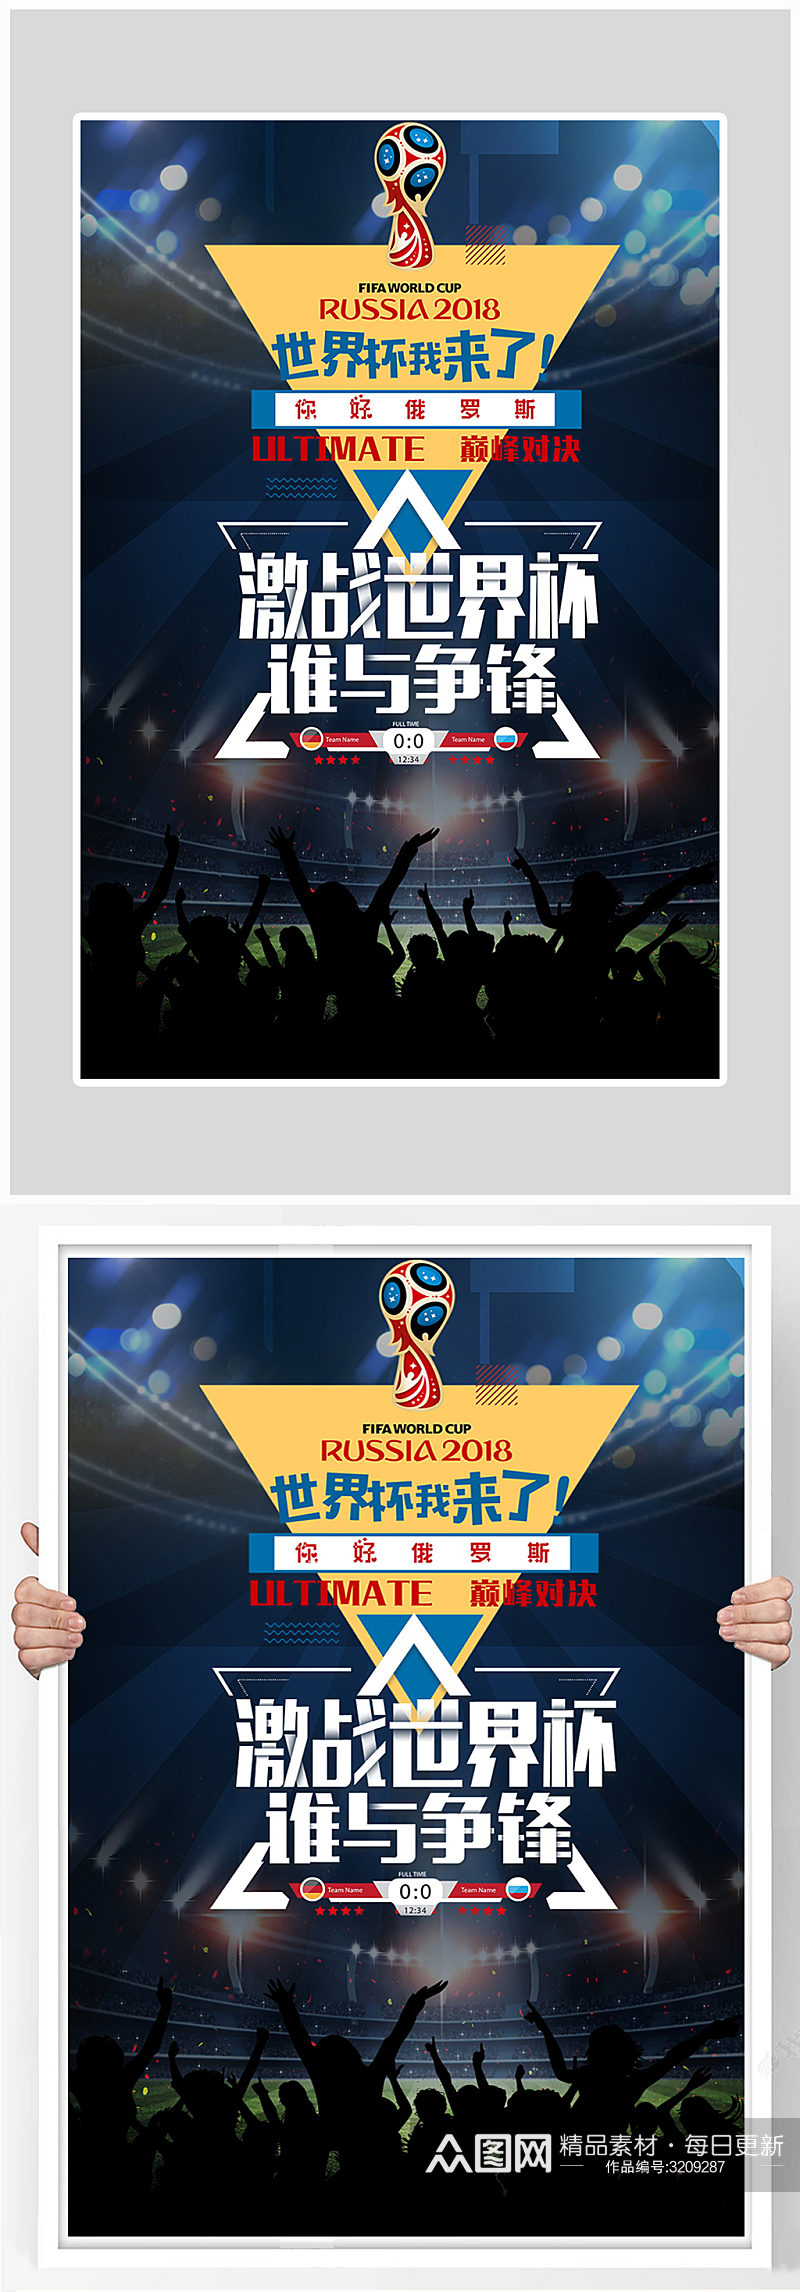 创意简约世界杯足球海报设计素材